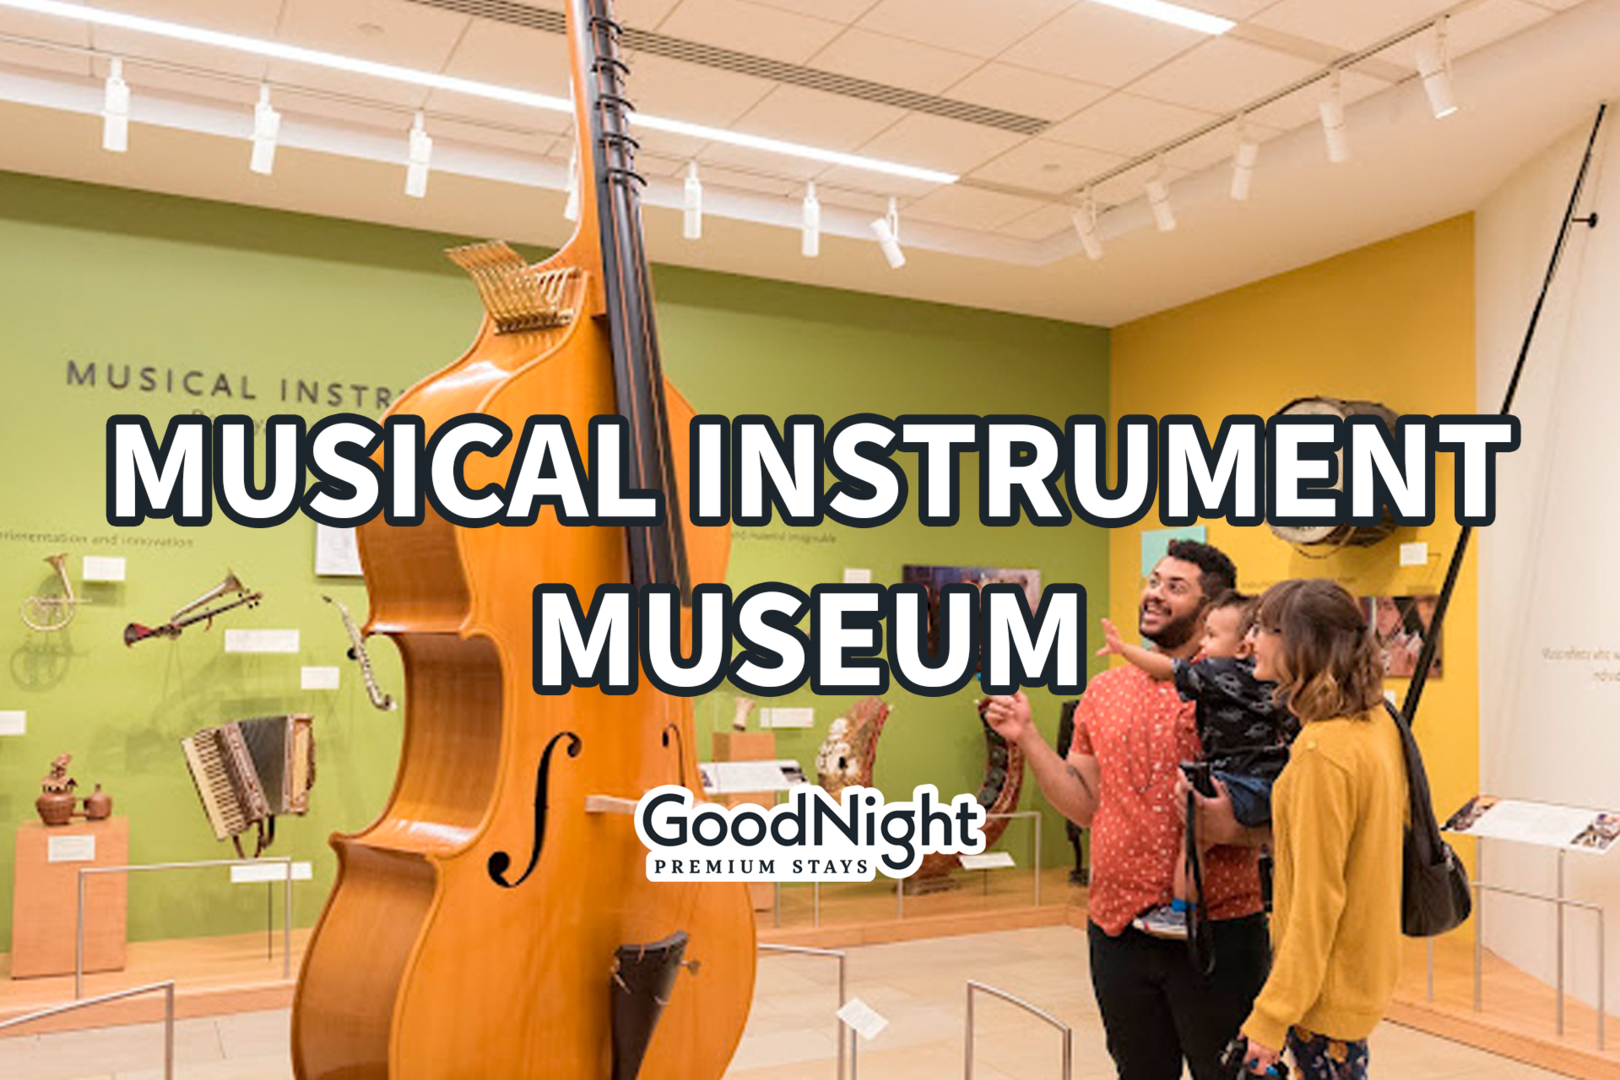 20 mins: Musical Instrument Museum